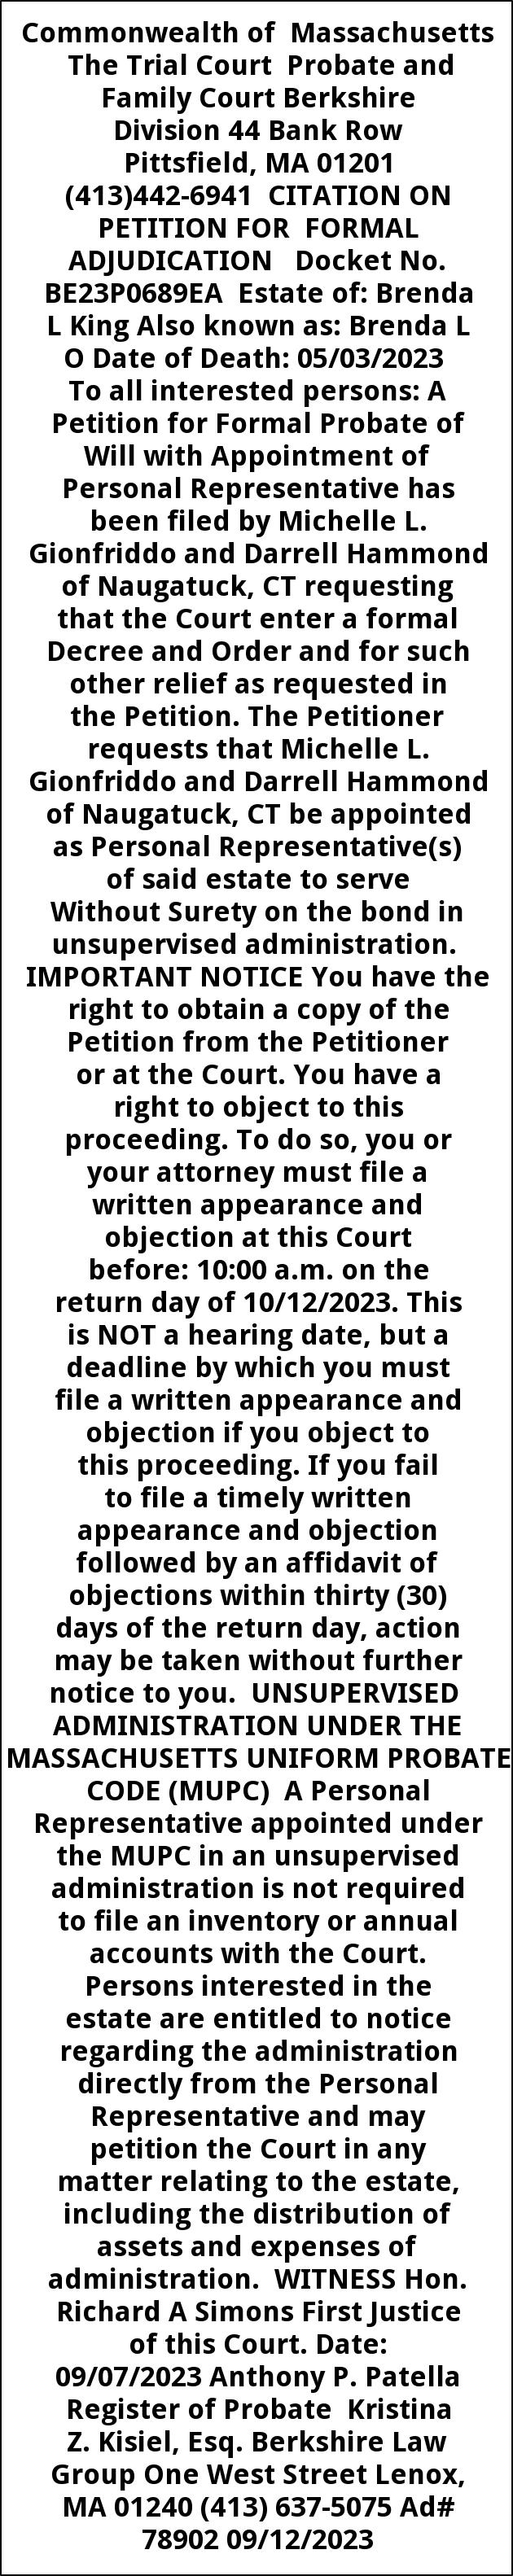 Citation On Petition For Formal Adjudication